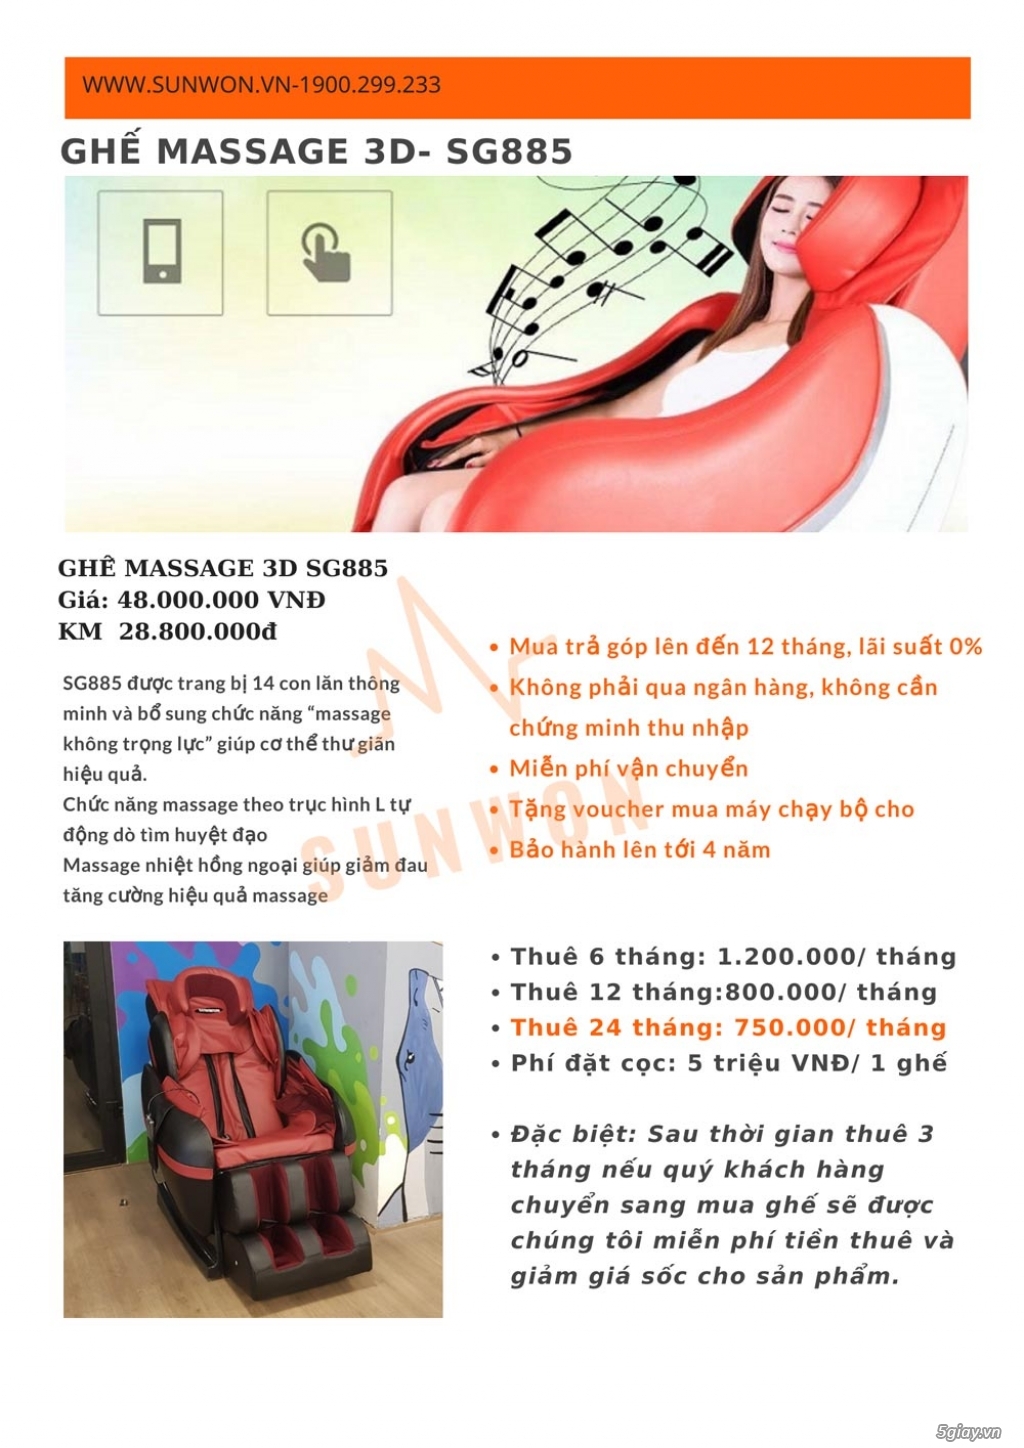 Cơ hội mua ghế massage trả góp với lãi suất 0% cùng Sunwon - 2